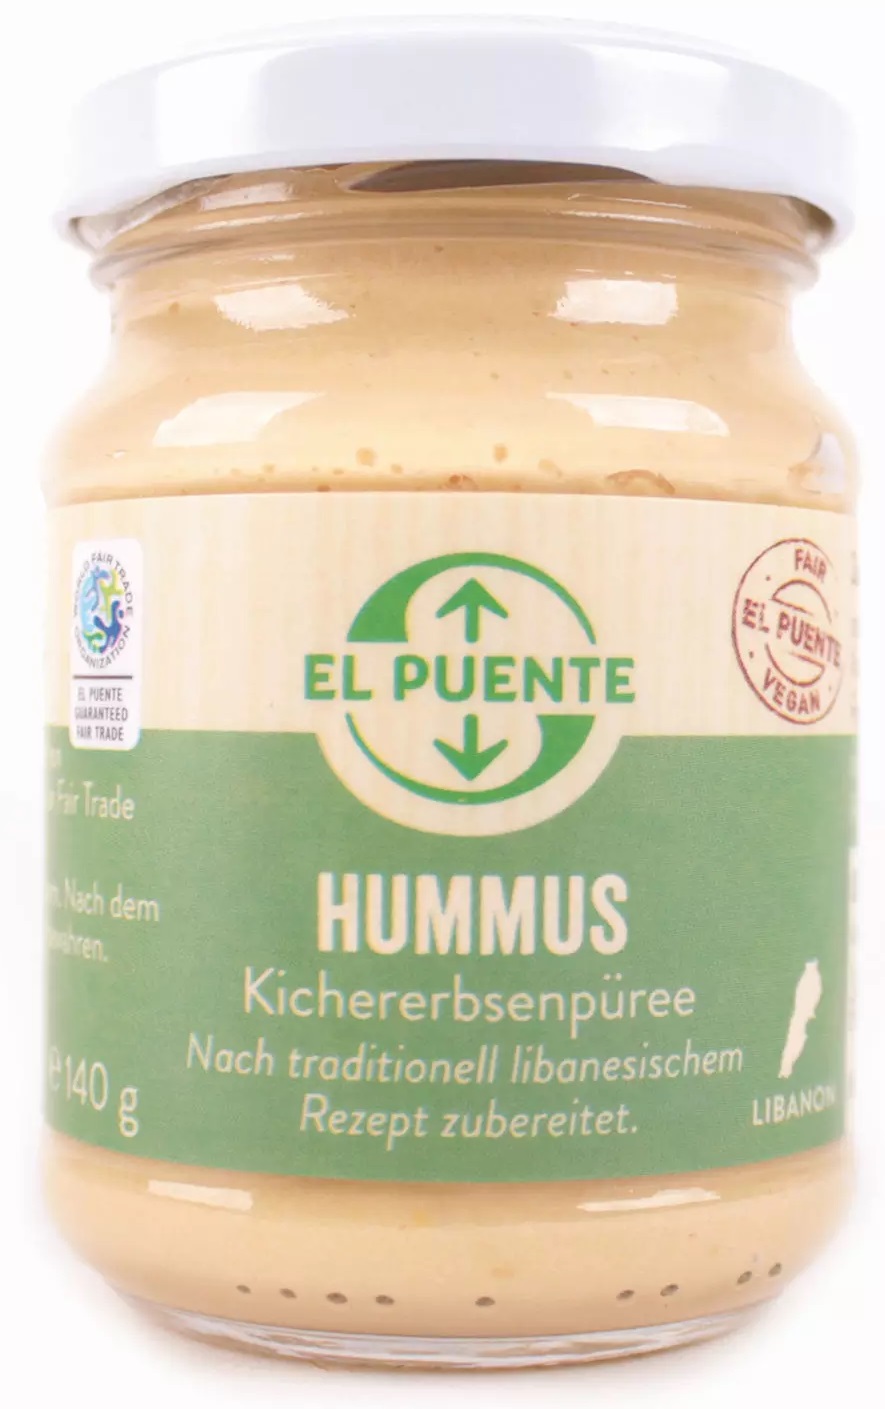 Hummus-image